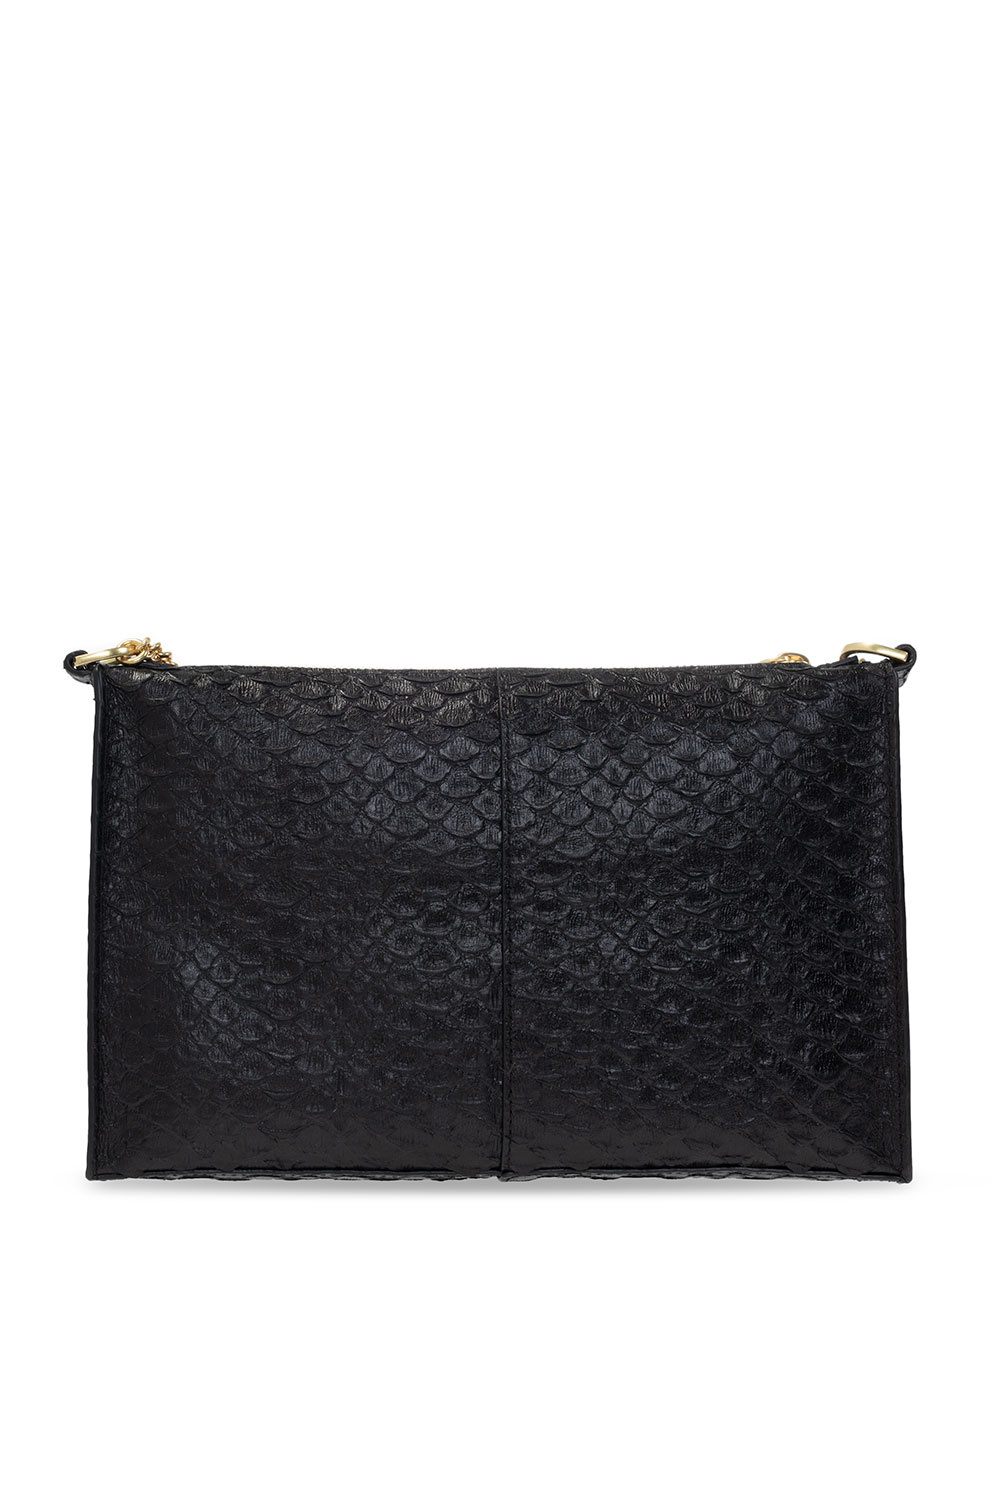 AllSaints 'eve' Quilted Shoulder Bag in Black